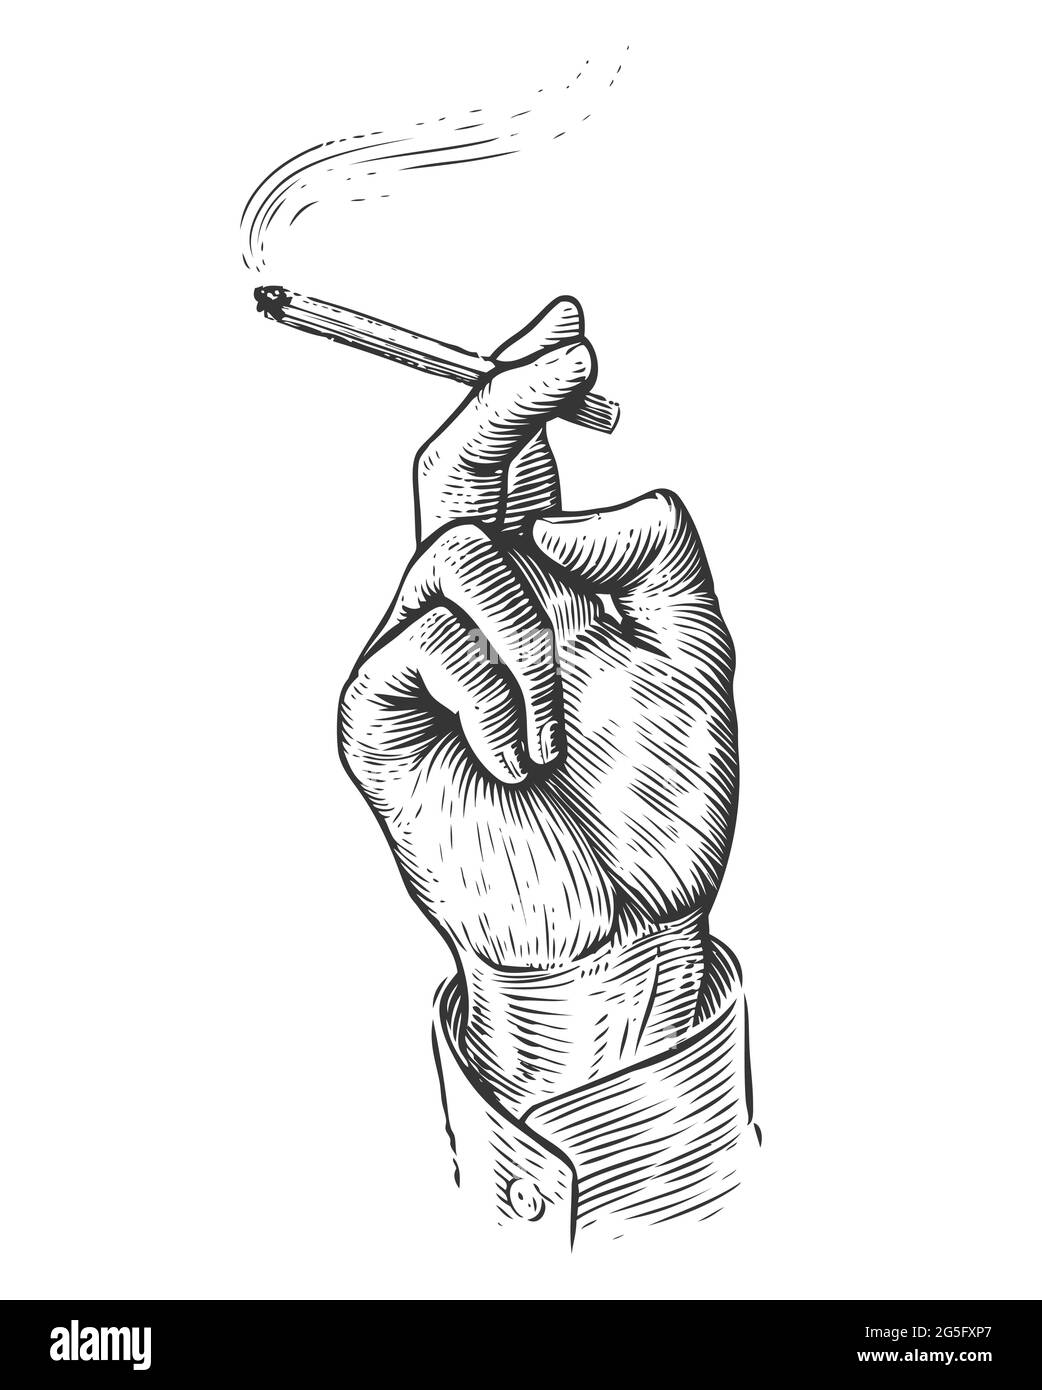 Hand mit brennender Zigarette. Rauchen von Tabak im Vintage-Gravurstil Stock Vektor